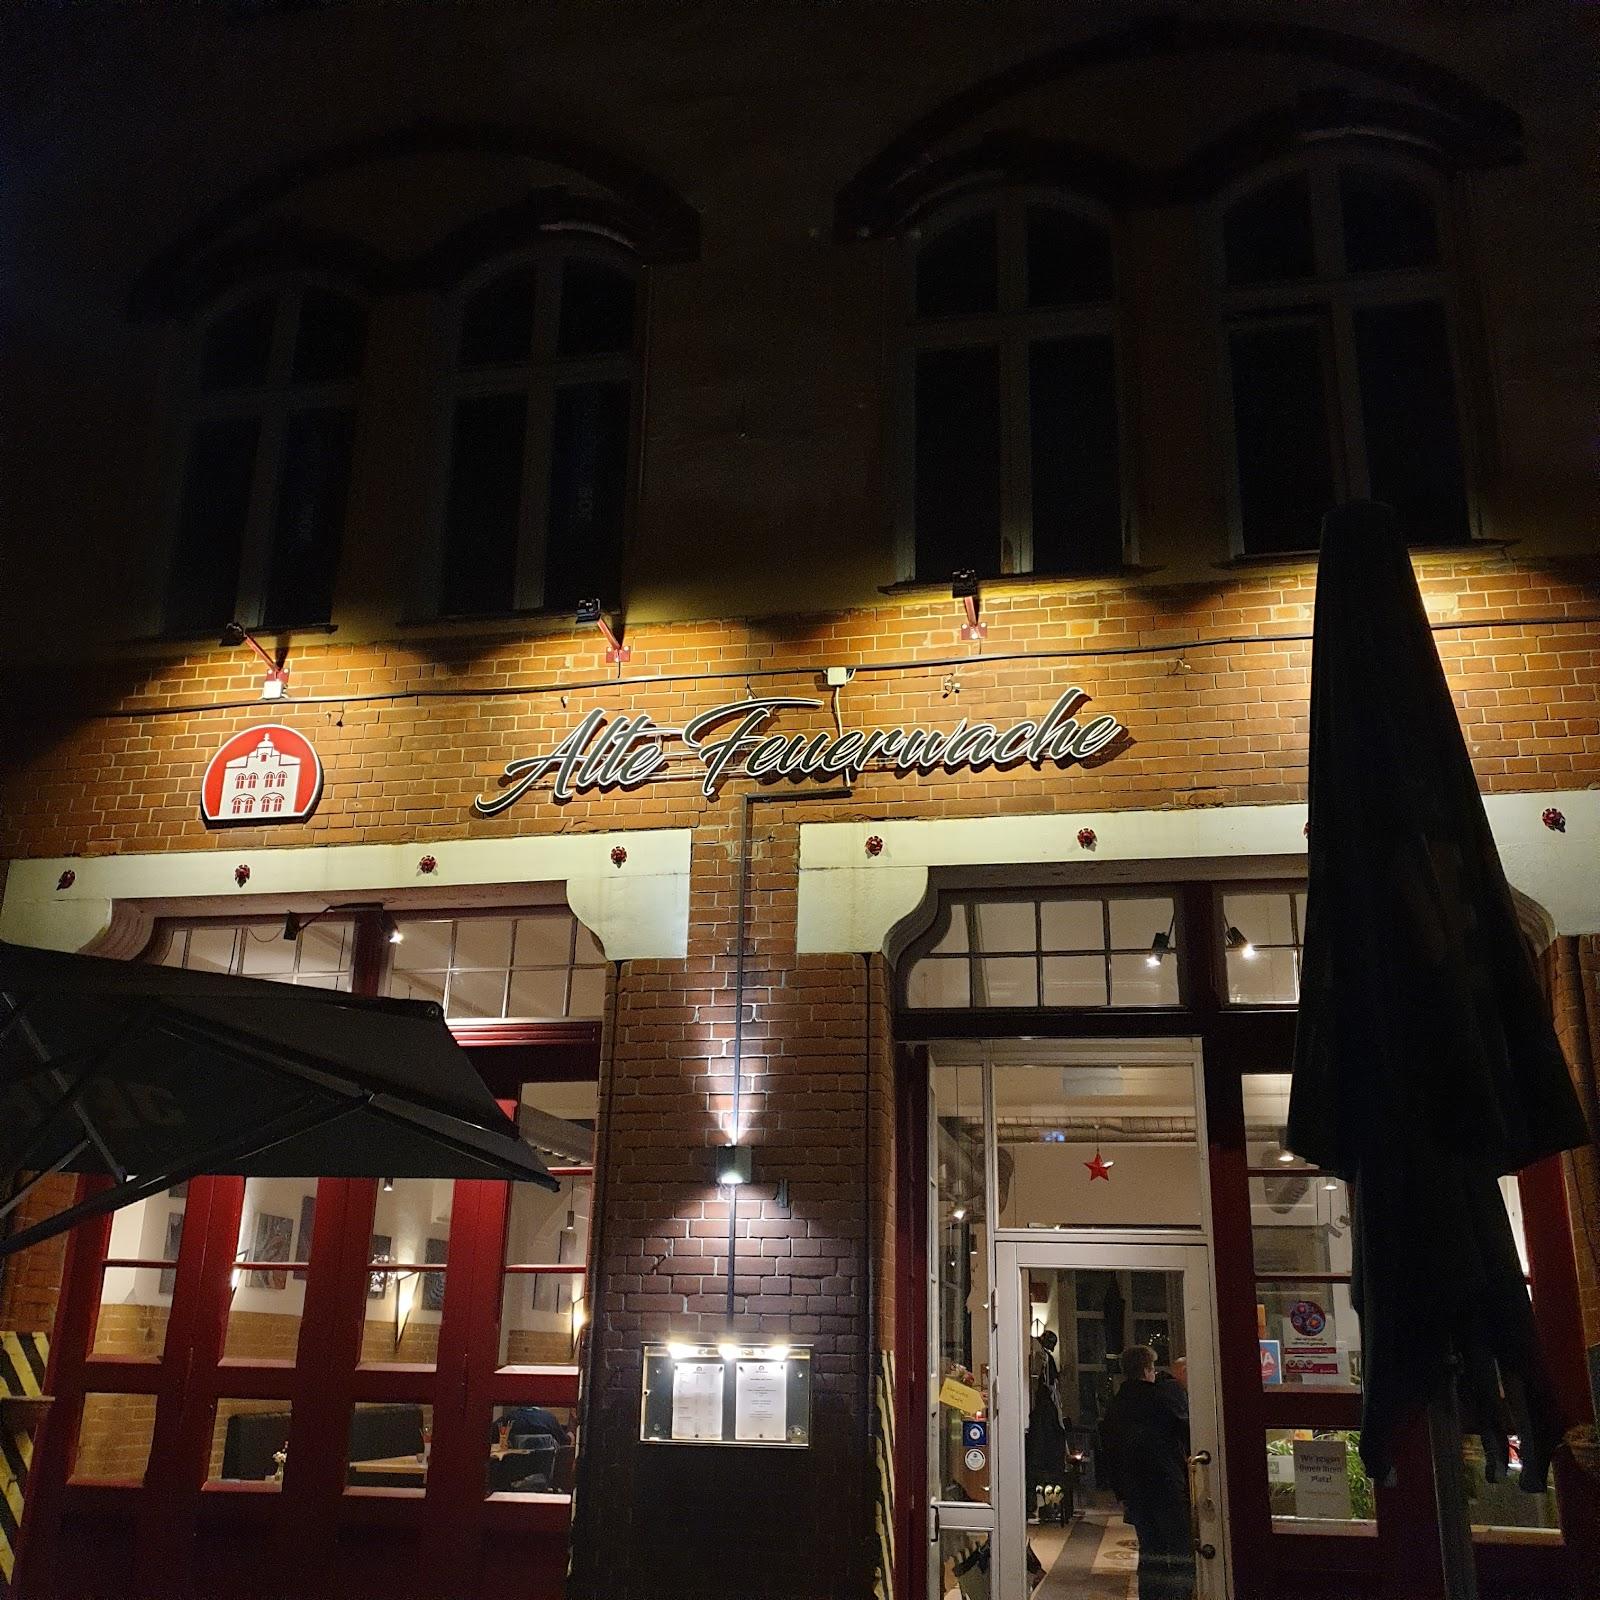 Restaurant "Restaurant Alte Feuerwache" in Lübeck